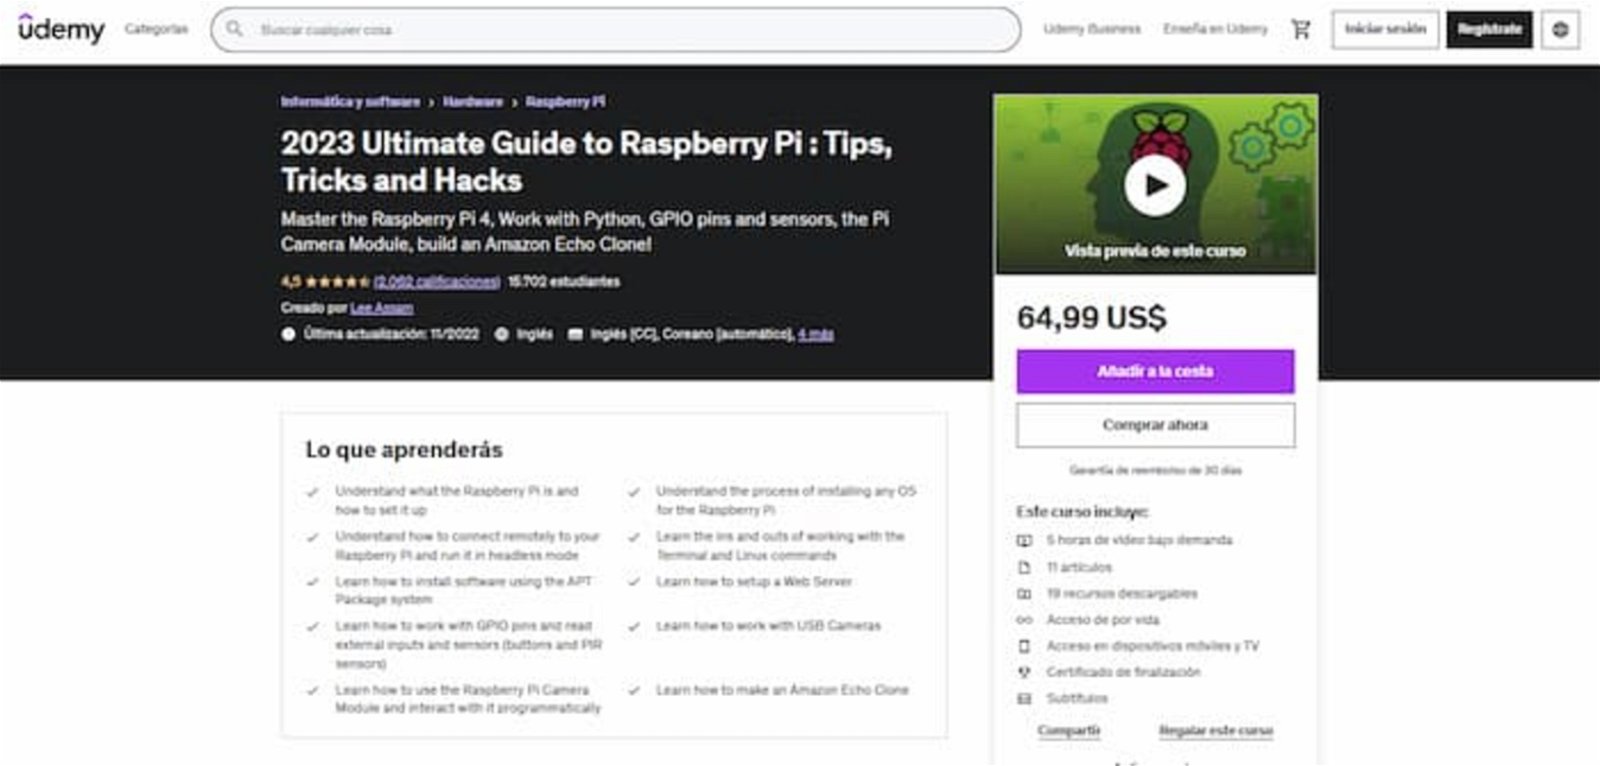 Si quieres aprender todo sobre la Raspberry Pi, desde cómo configurarla, cómo realizar una conexión remota y mucho más, entonces debes unirte a este curso